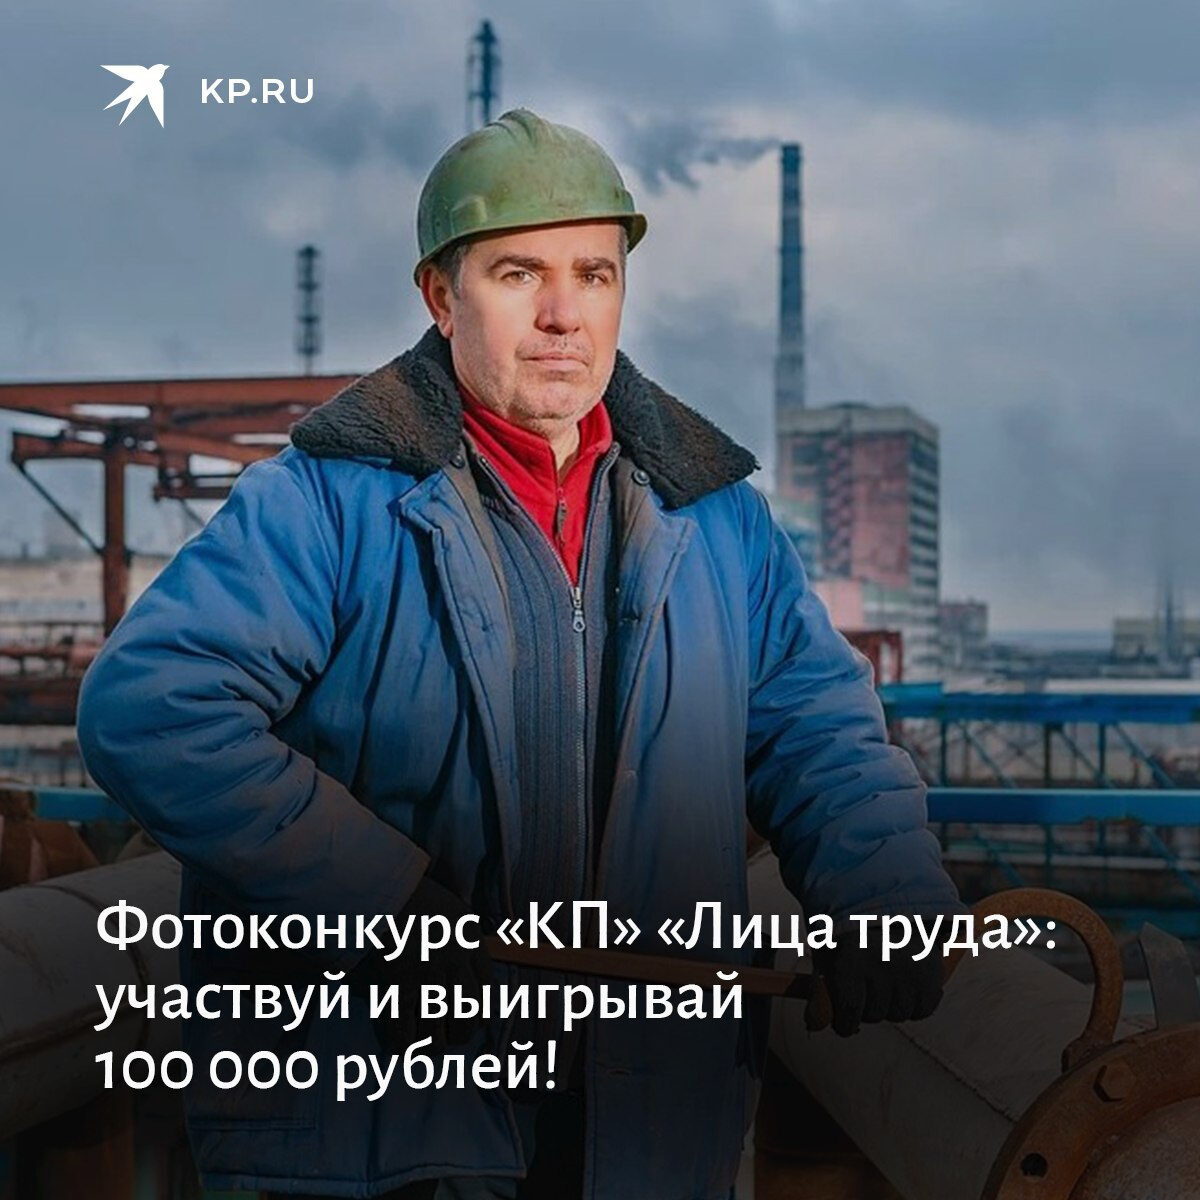 Жители Белгородского района приглашаются принять участие в фотоконкурсе «Лица труда».